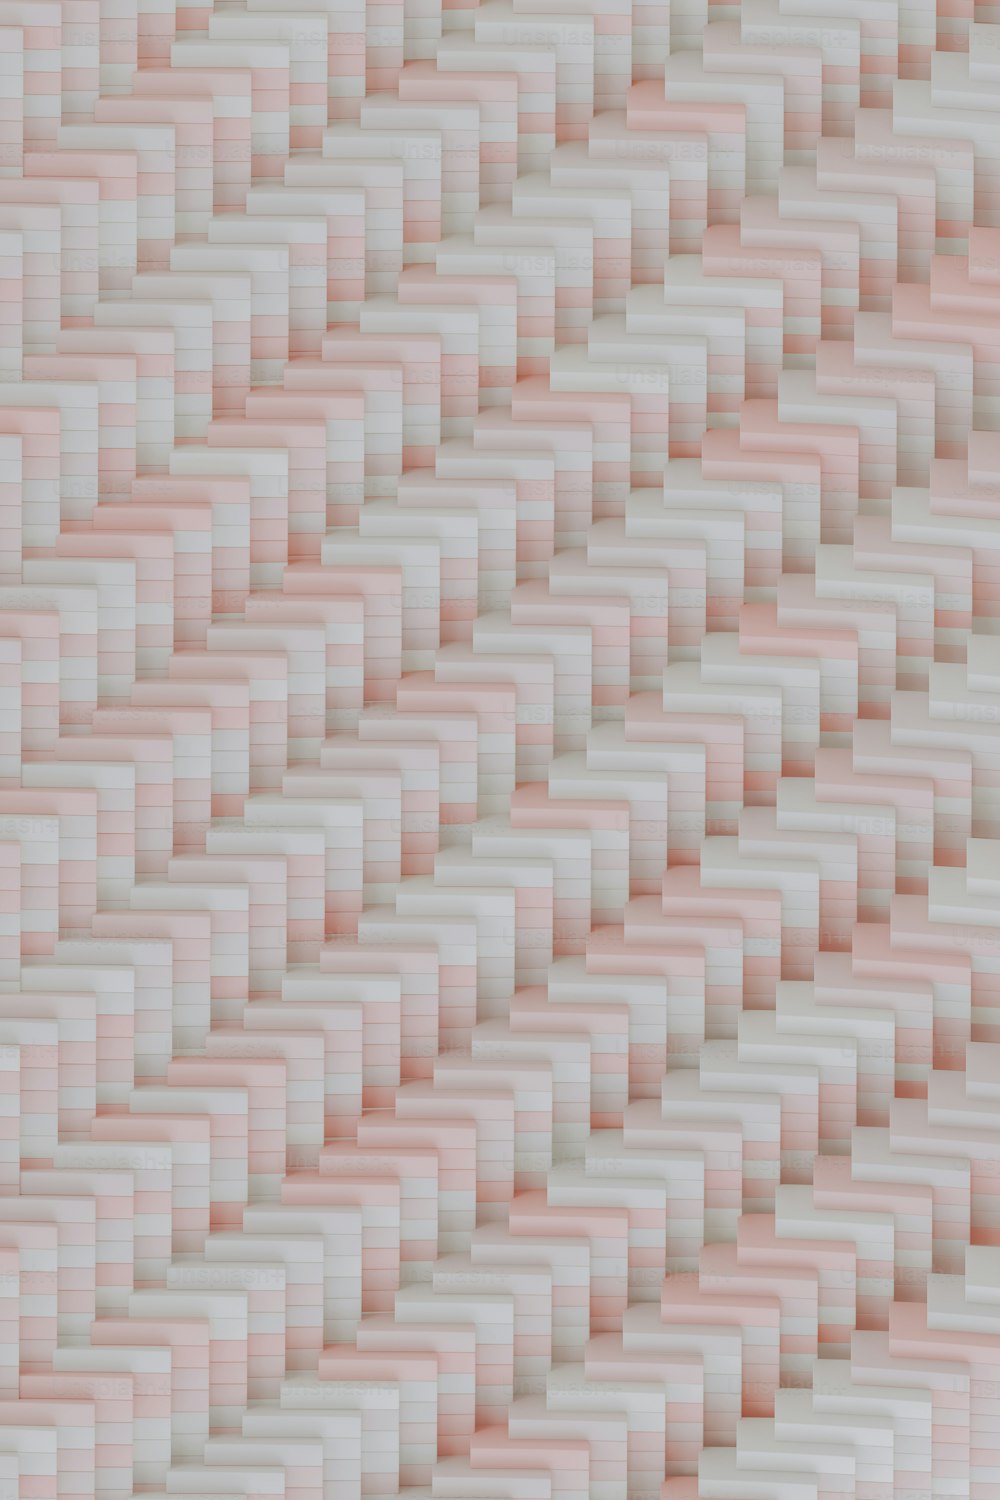 Una pared rosa y blanca con un patrón de cuadrados